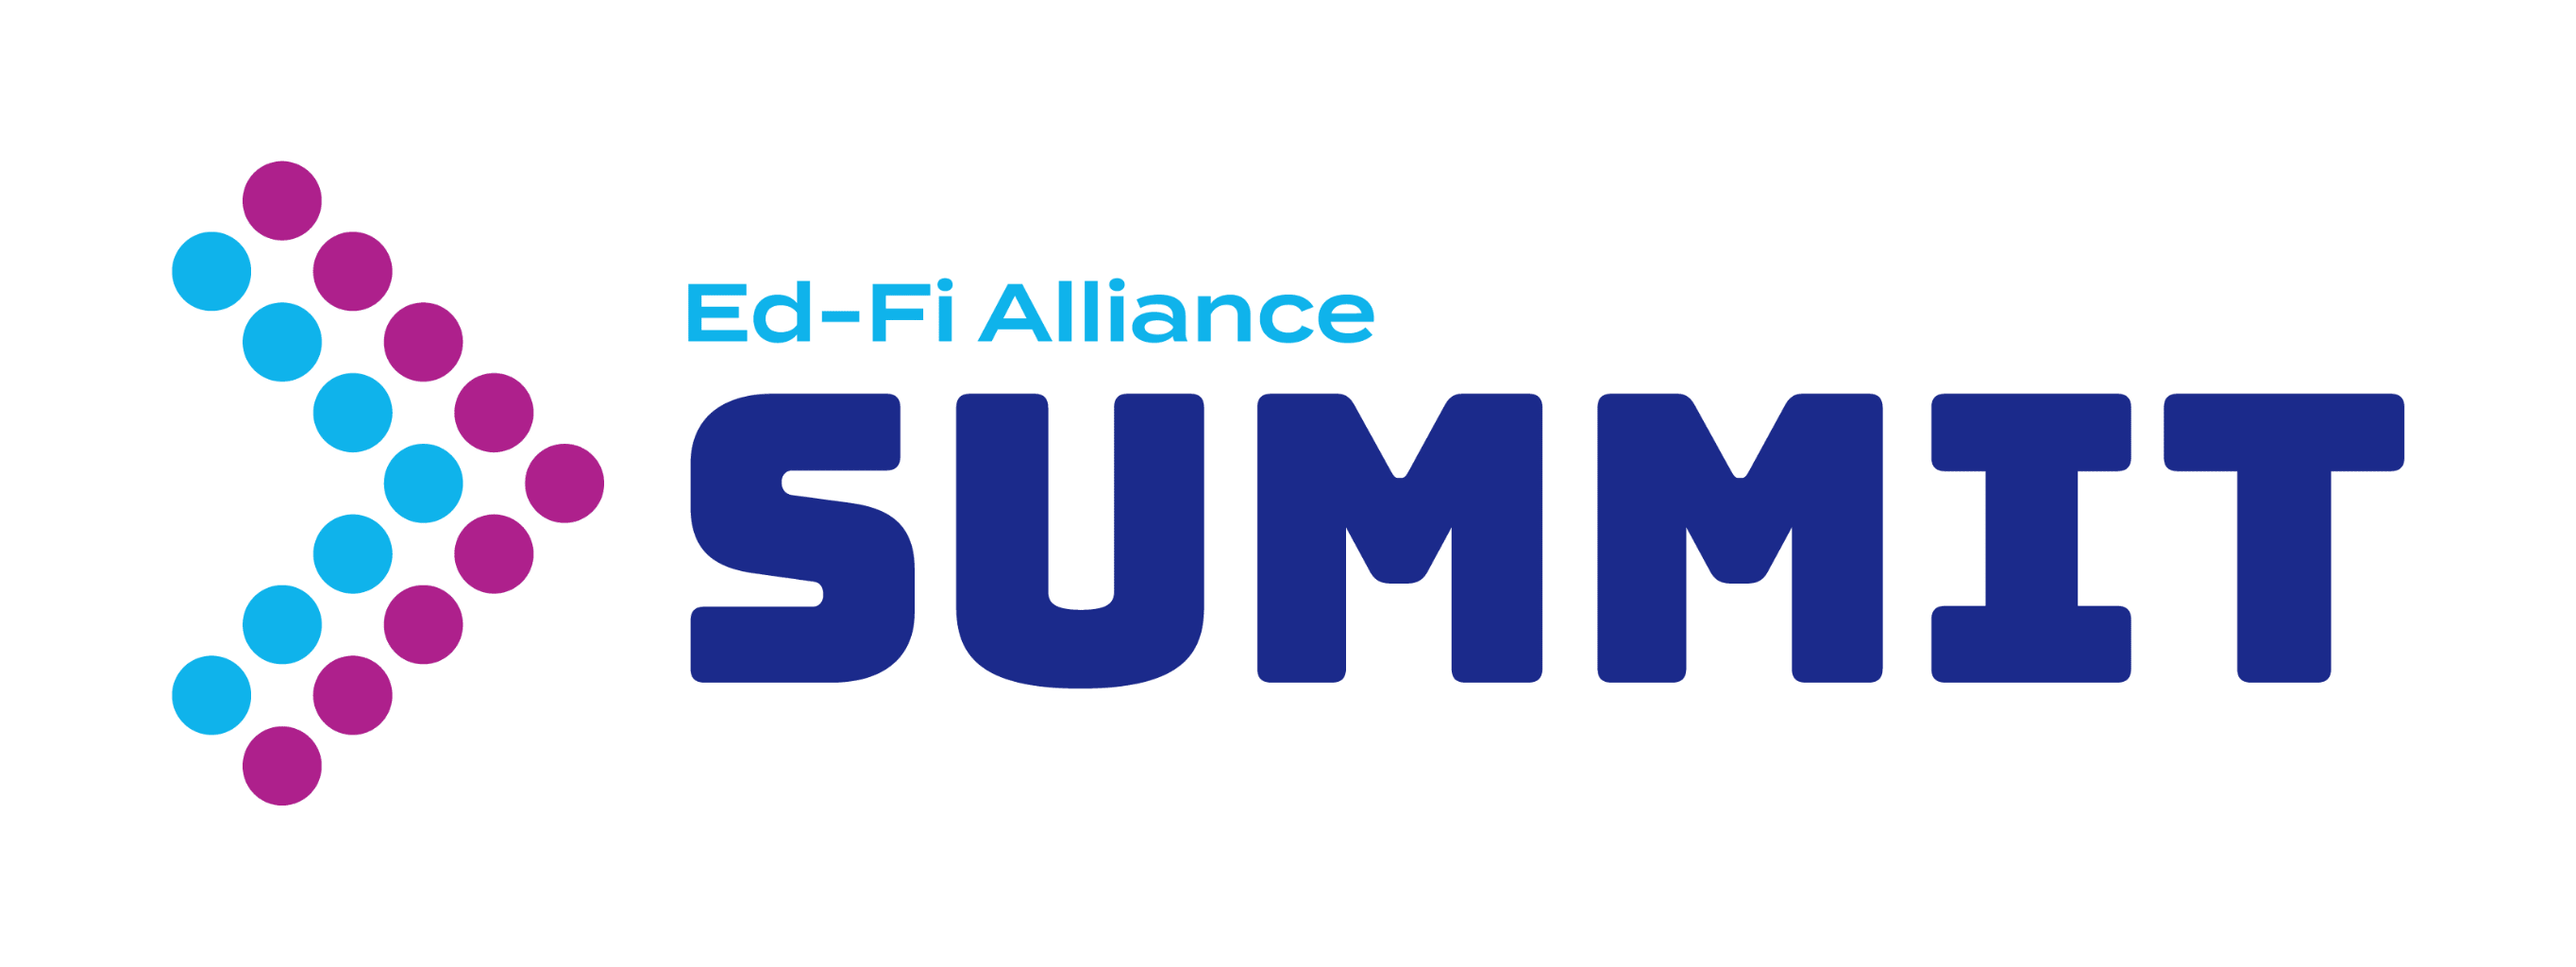 EdFi Alliance Summit 2022